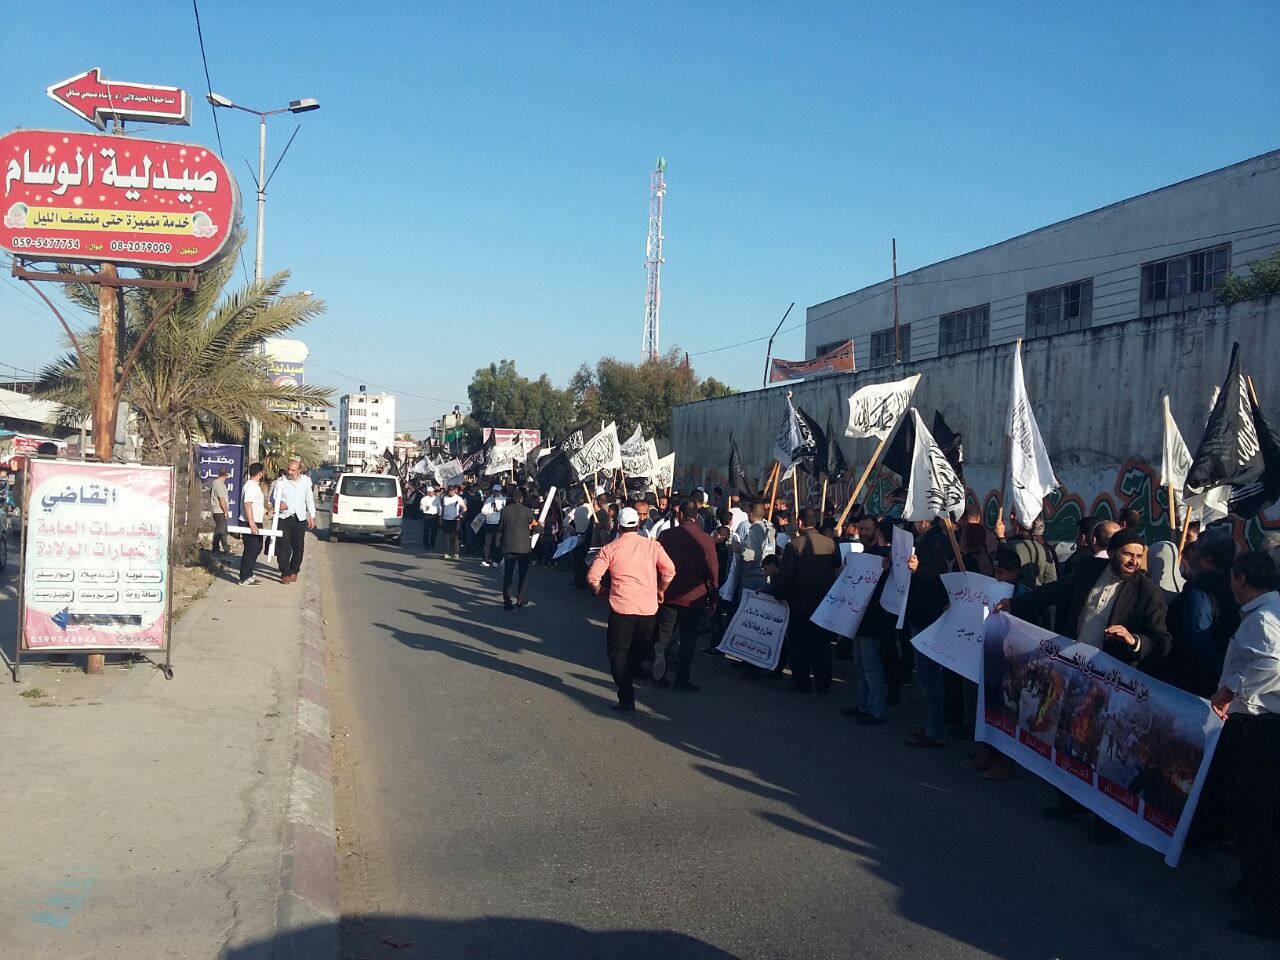 مسيرة الخلافة قوة بعد ضعف وأمن بعد خوف تنطلق الآن في خانيونس بقطاع غزة